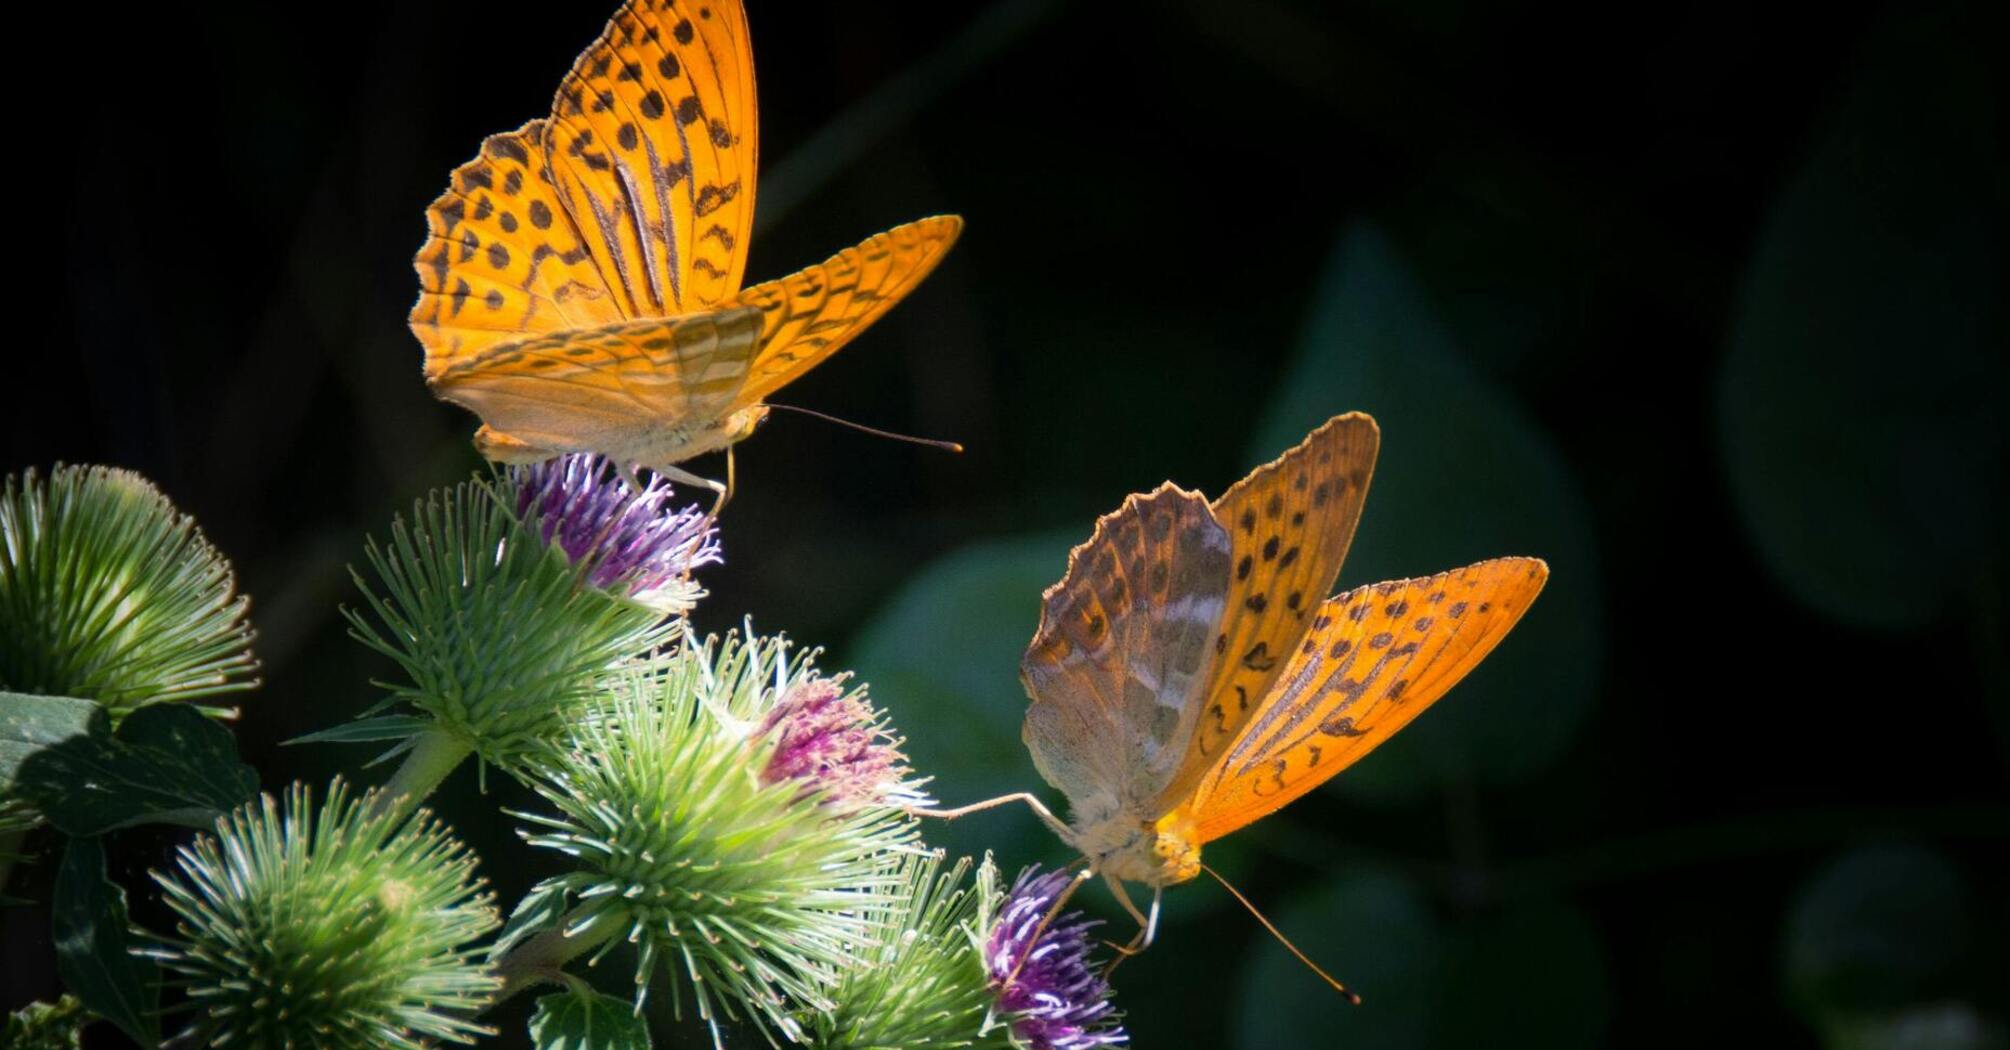 Експерти назвали простий спосіб збільшити кількість метеликів у саду удвічі: допоможуть запилювати дерева